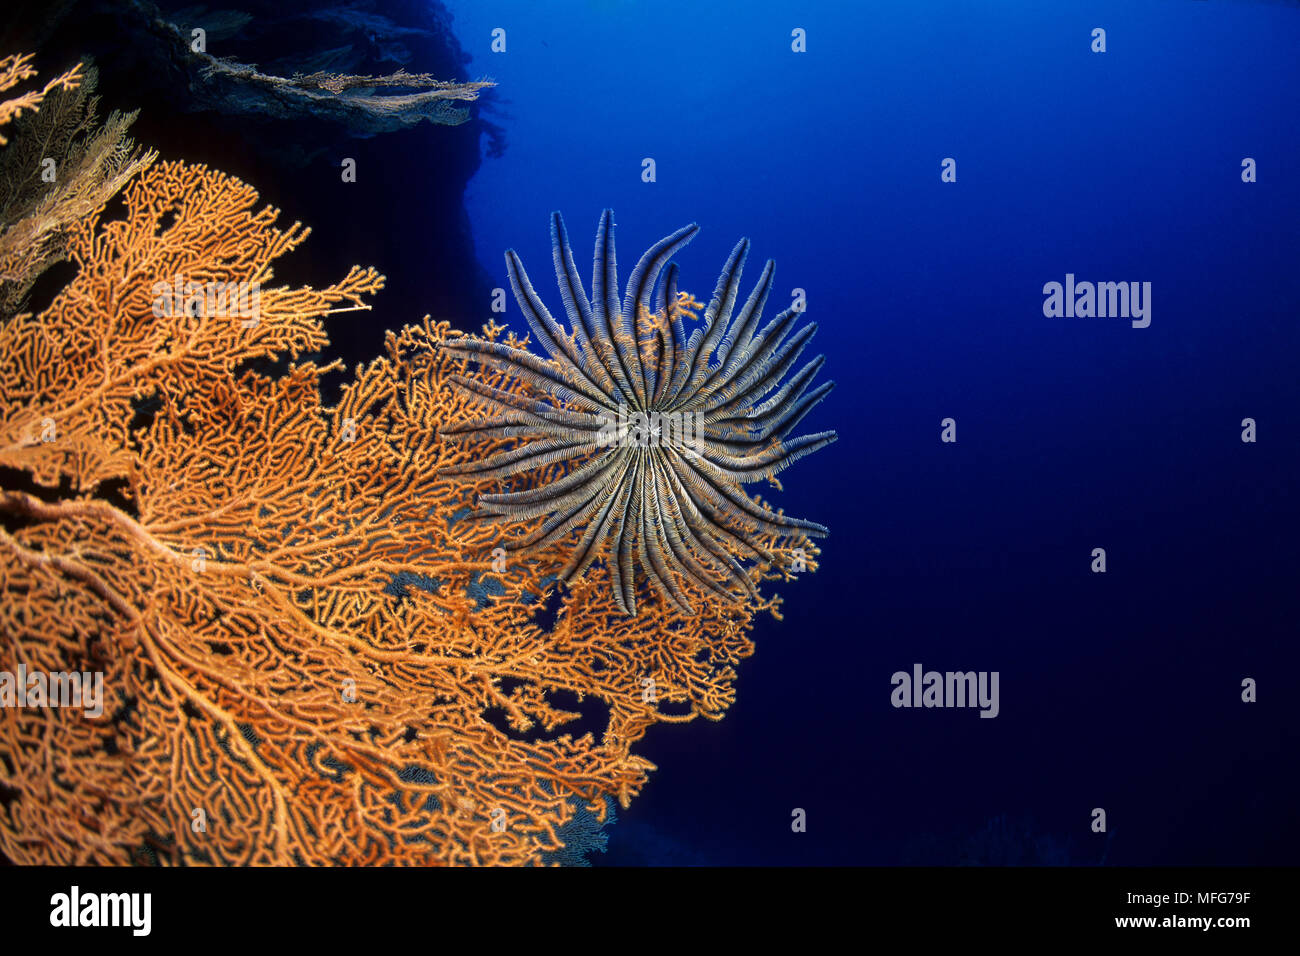 Ventola gorgonia, Subergorgia mollis, con piuma star, Aldabra Atoll, patrimonio mondiale naturale, Seychelles, Oceano Indiano Data: 24.06.08 RIF: ZB777 Foto Stock